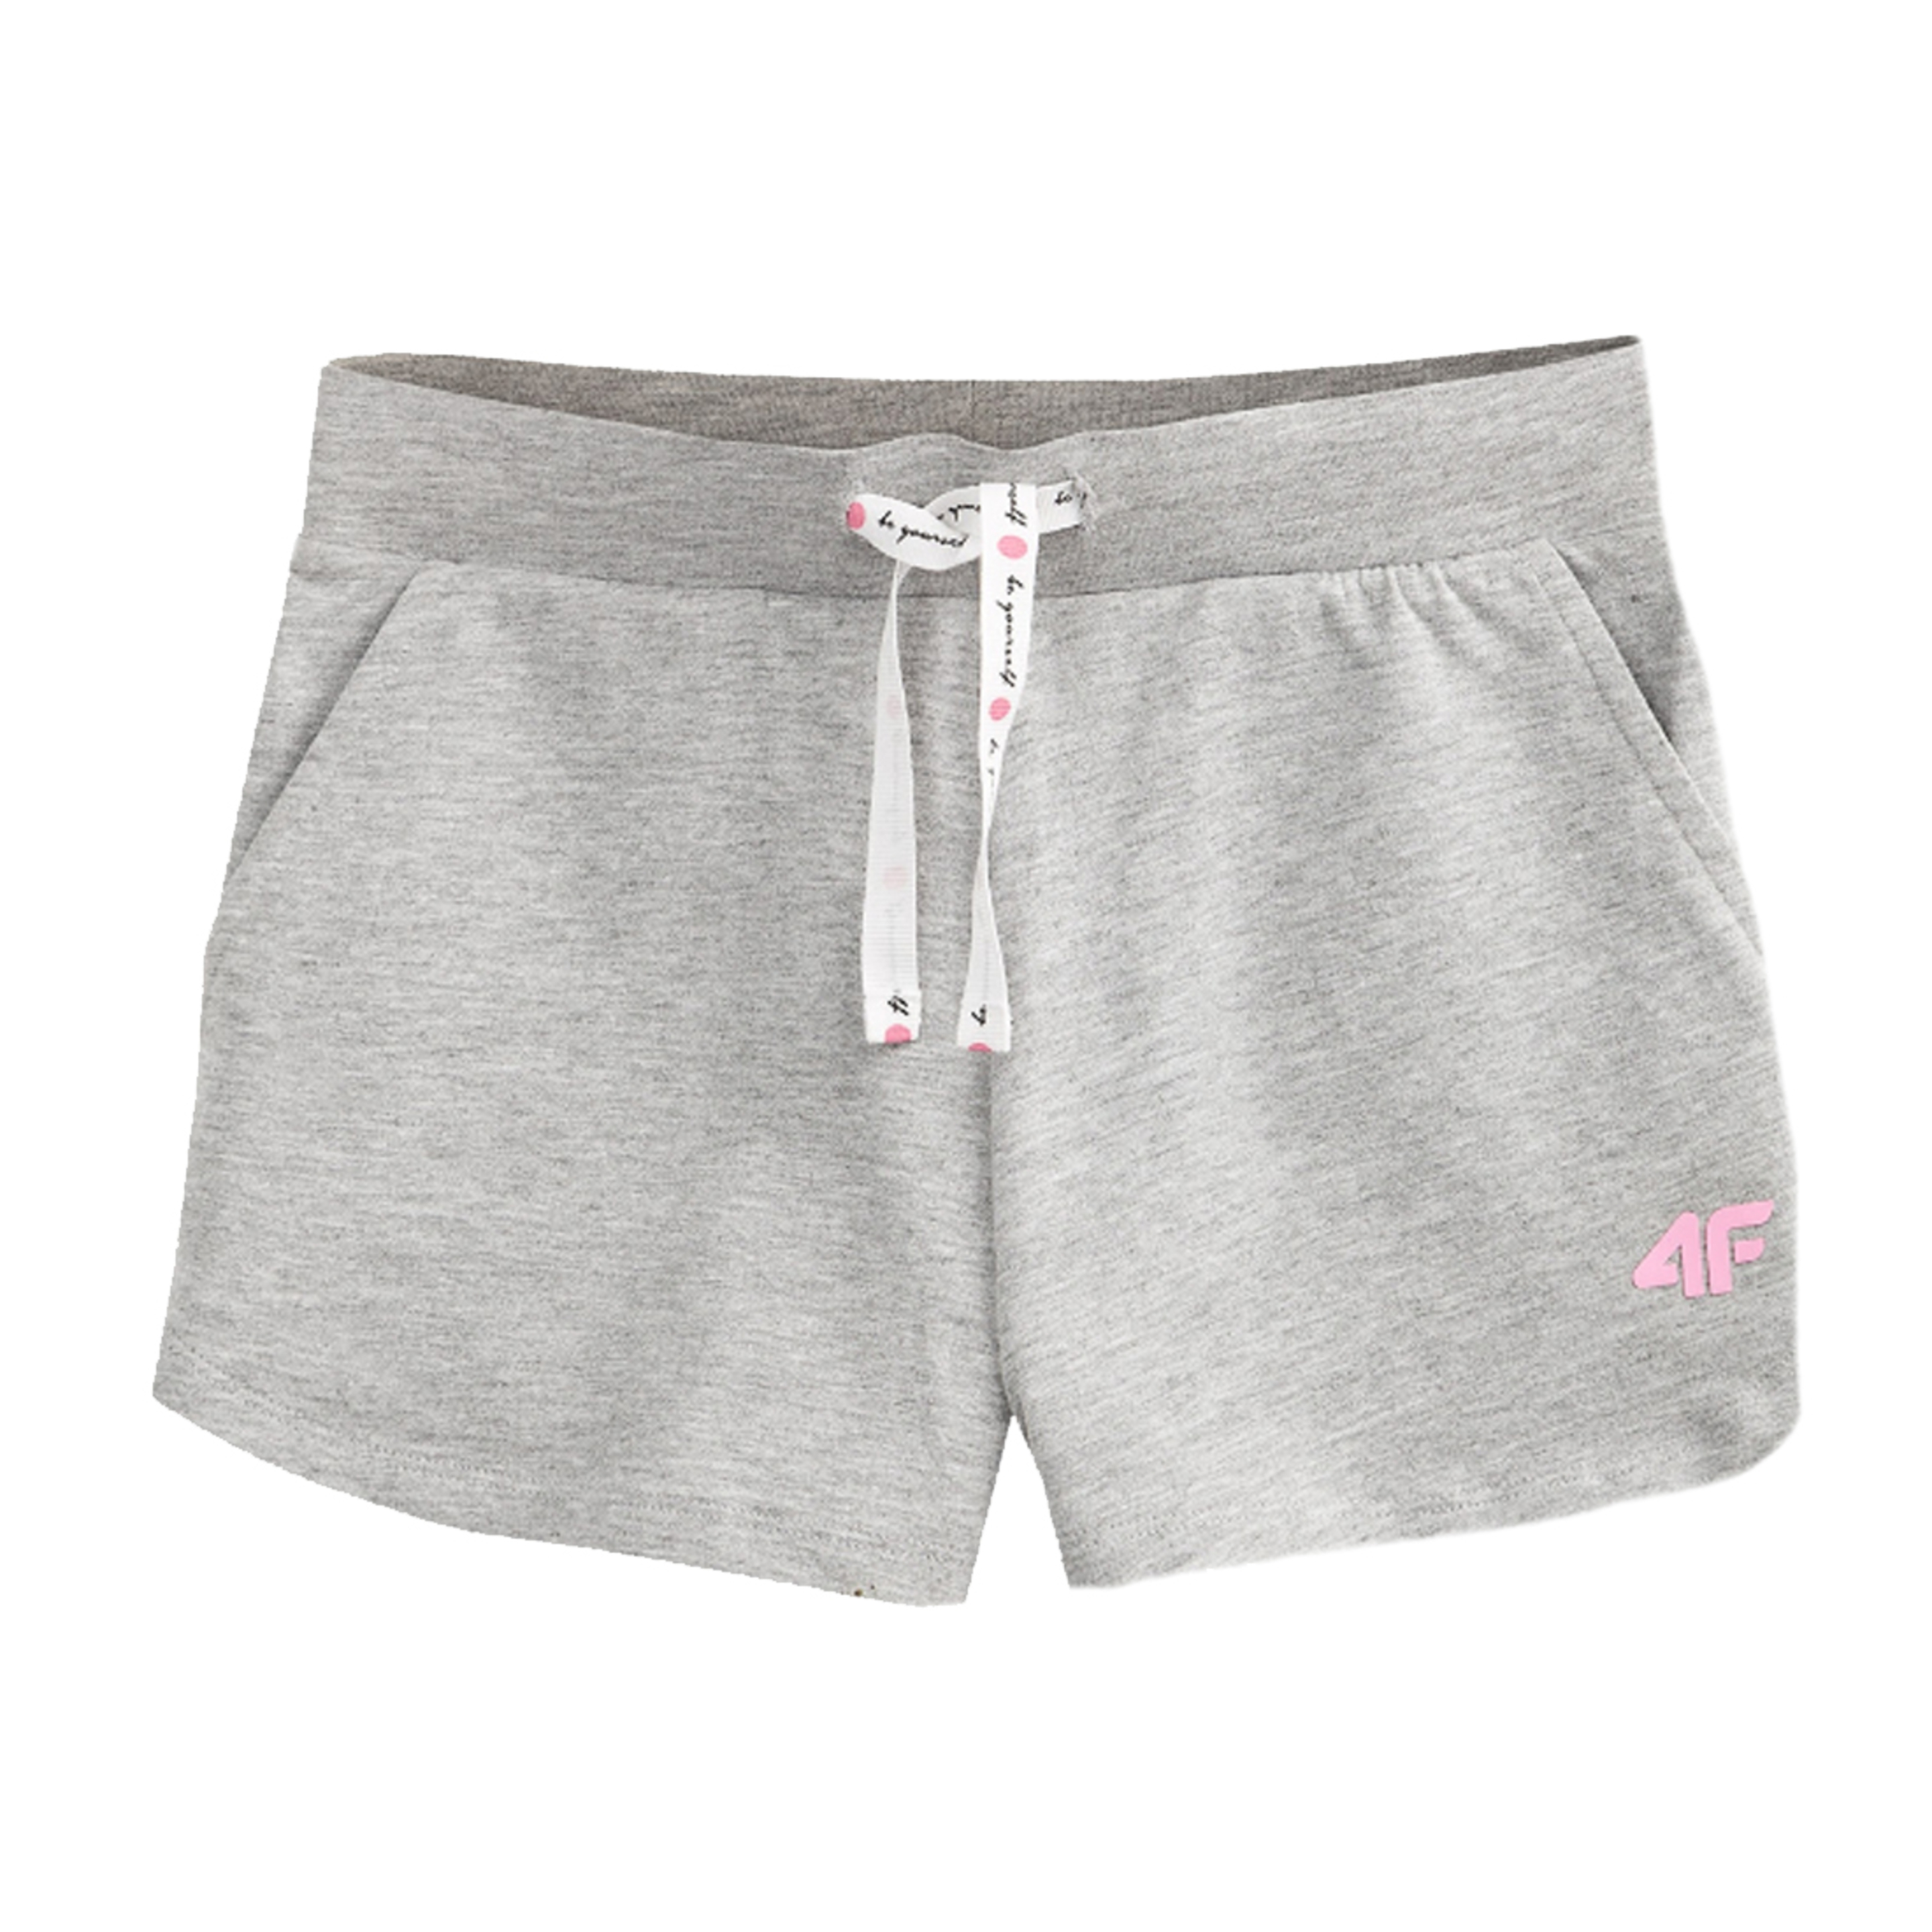 4f Girl's Shorts Hjl20-jskdd001-25m - gris - 